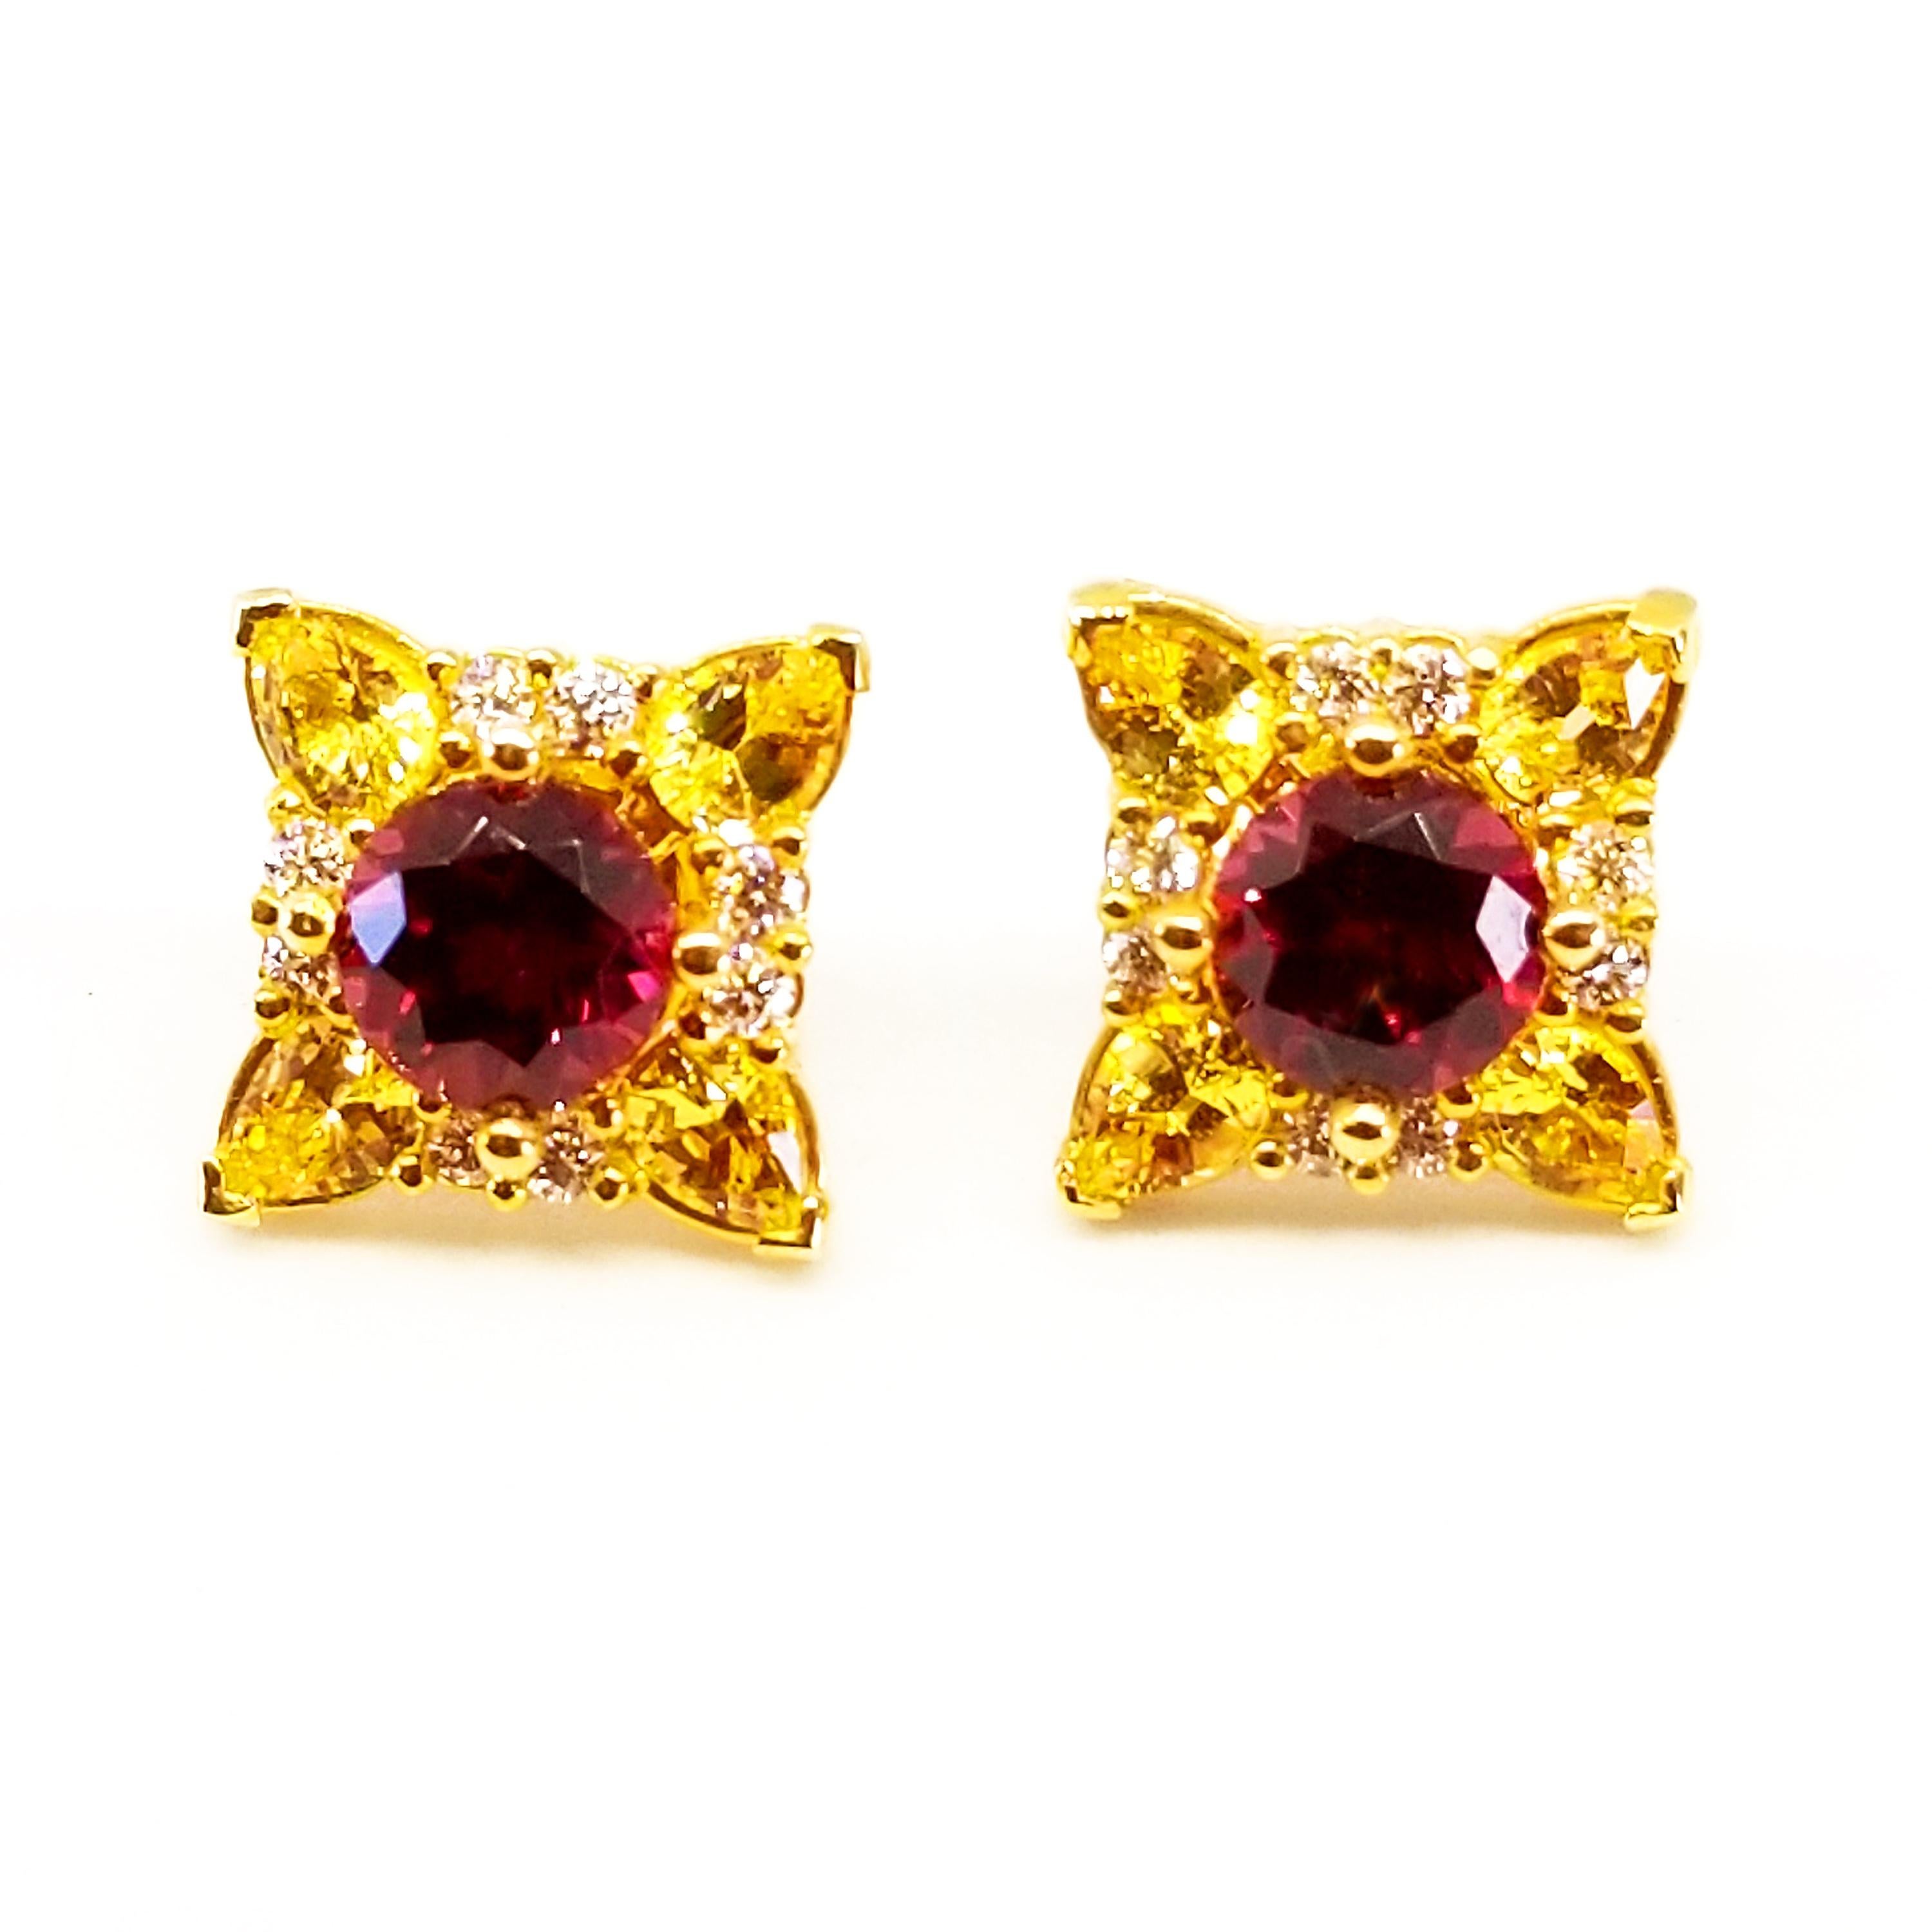 Cette paire colorée de boucles d'oreilles en forme de bouquet de fleurs en rouge profond et en jaune est composée de diamants ronds naturels  Grenats rhodolites de 6 mm chacun et d'un poids total de 2,20 carats. Les pierres de qualité gemme sont